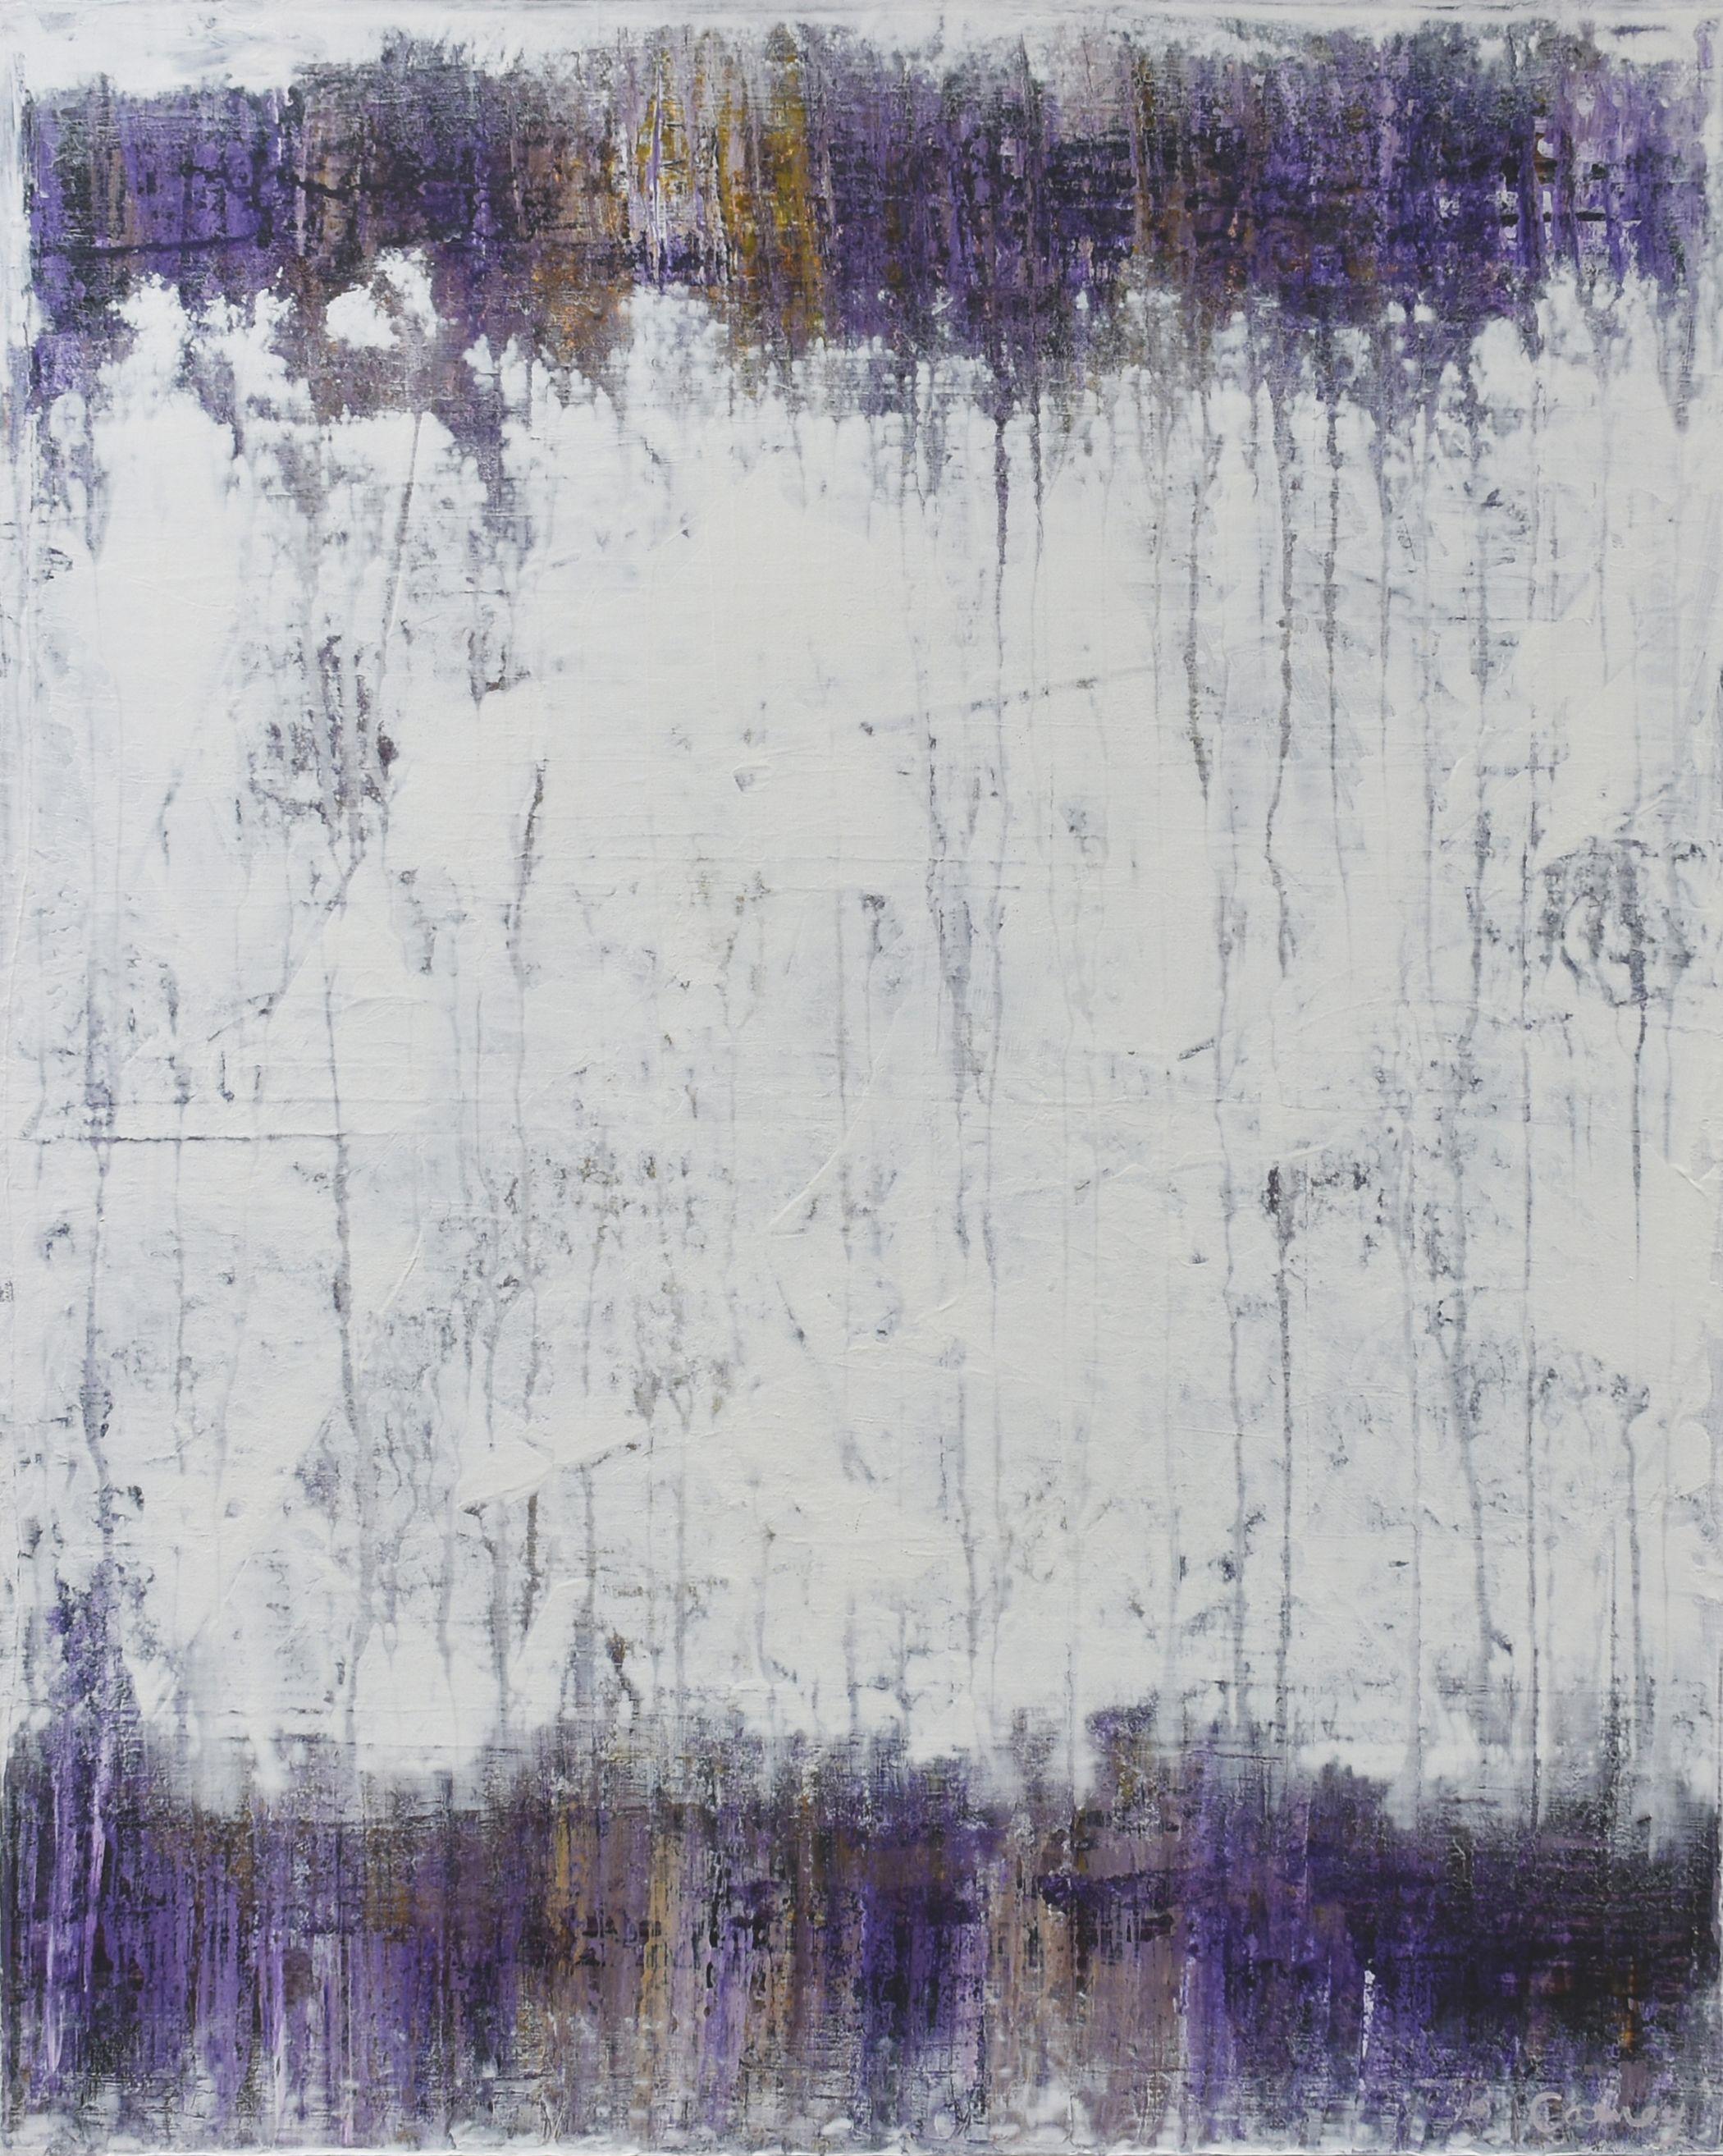 â€œWhite Purpleâ€ is a lovely atmospheric abstract painting on canvas. It was created by layering acrylic paint in purple, yellow and white. The build up of slightly different transparent shades add interest and depth to the work.     For the